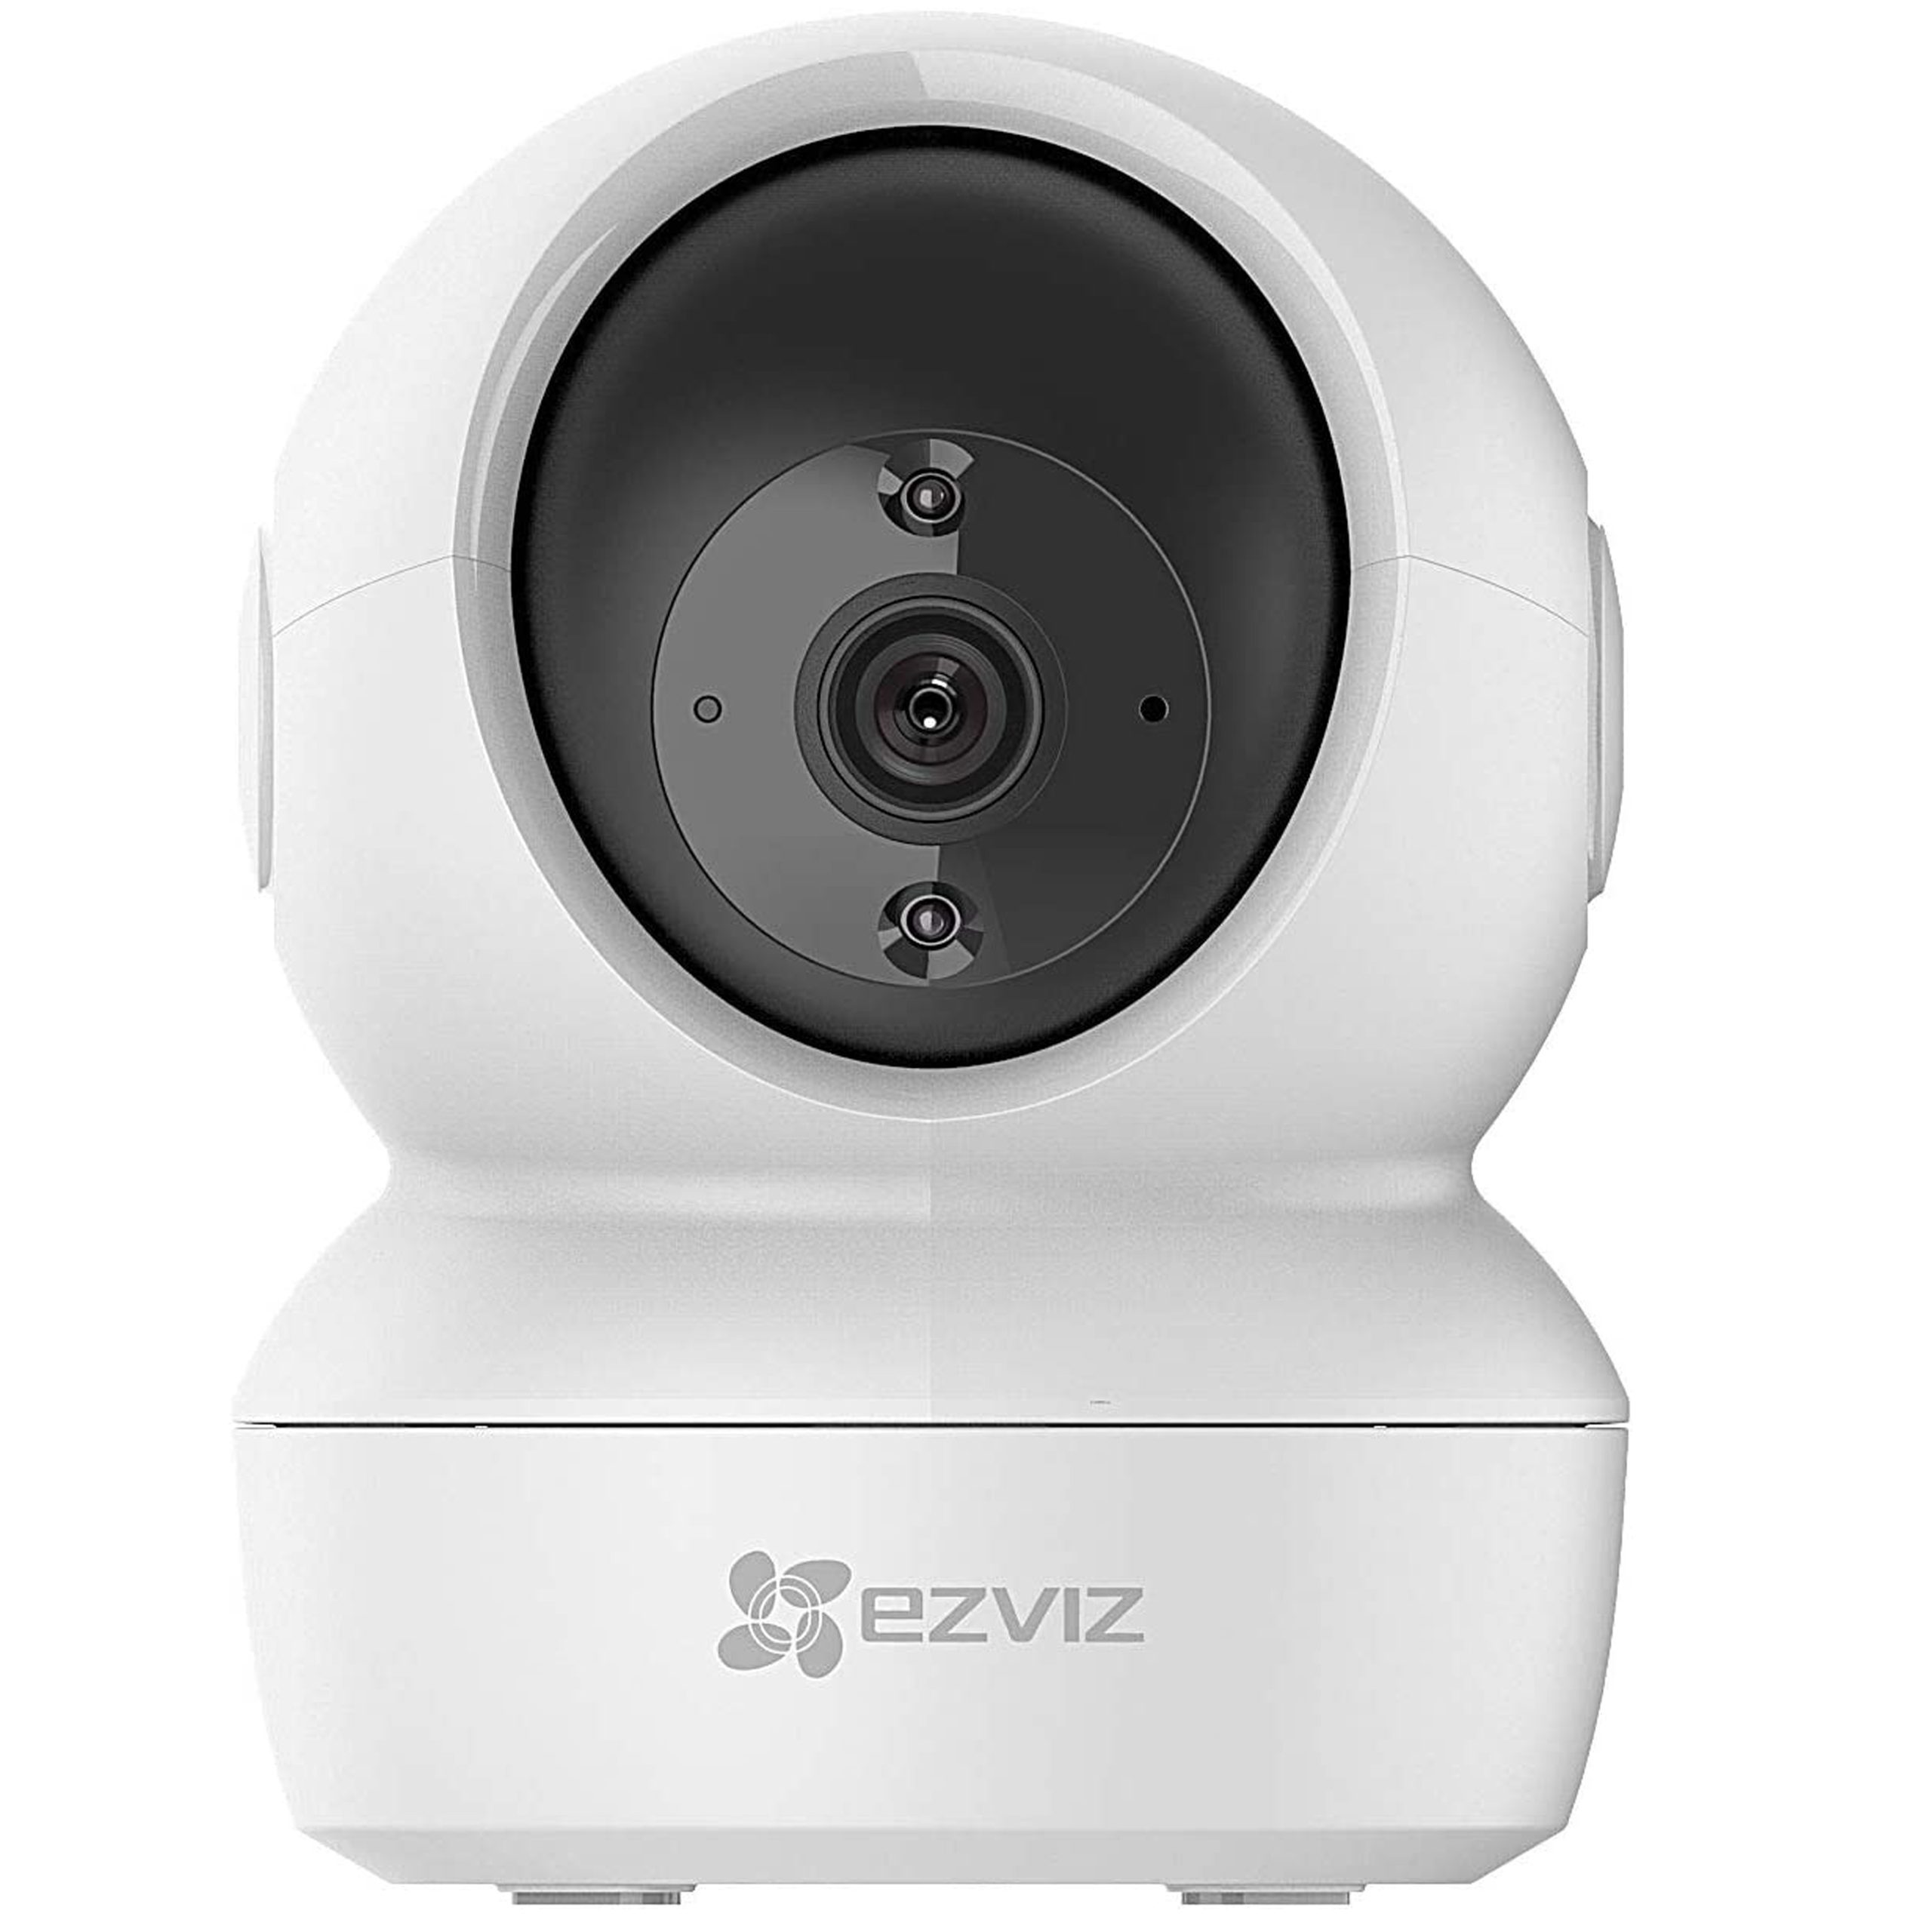 دوربین امنیتی نظارتی هوشمند Ezviz C6N, 1080P Wifi Smart Home Security Camera